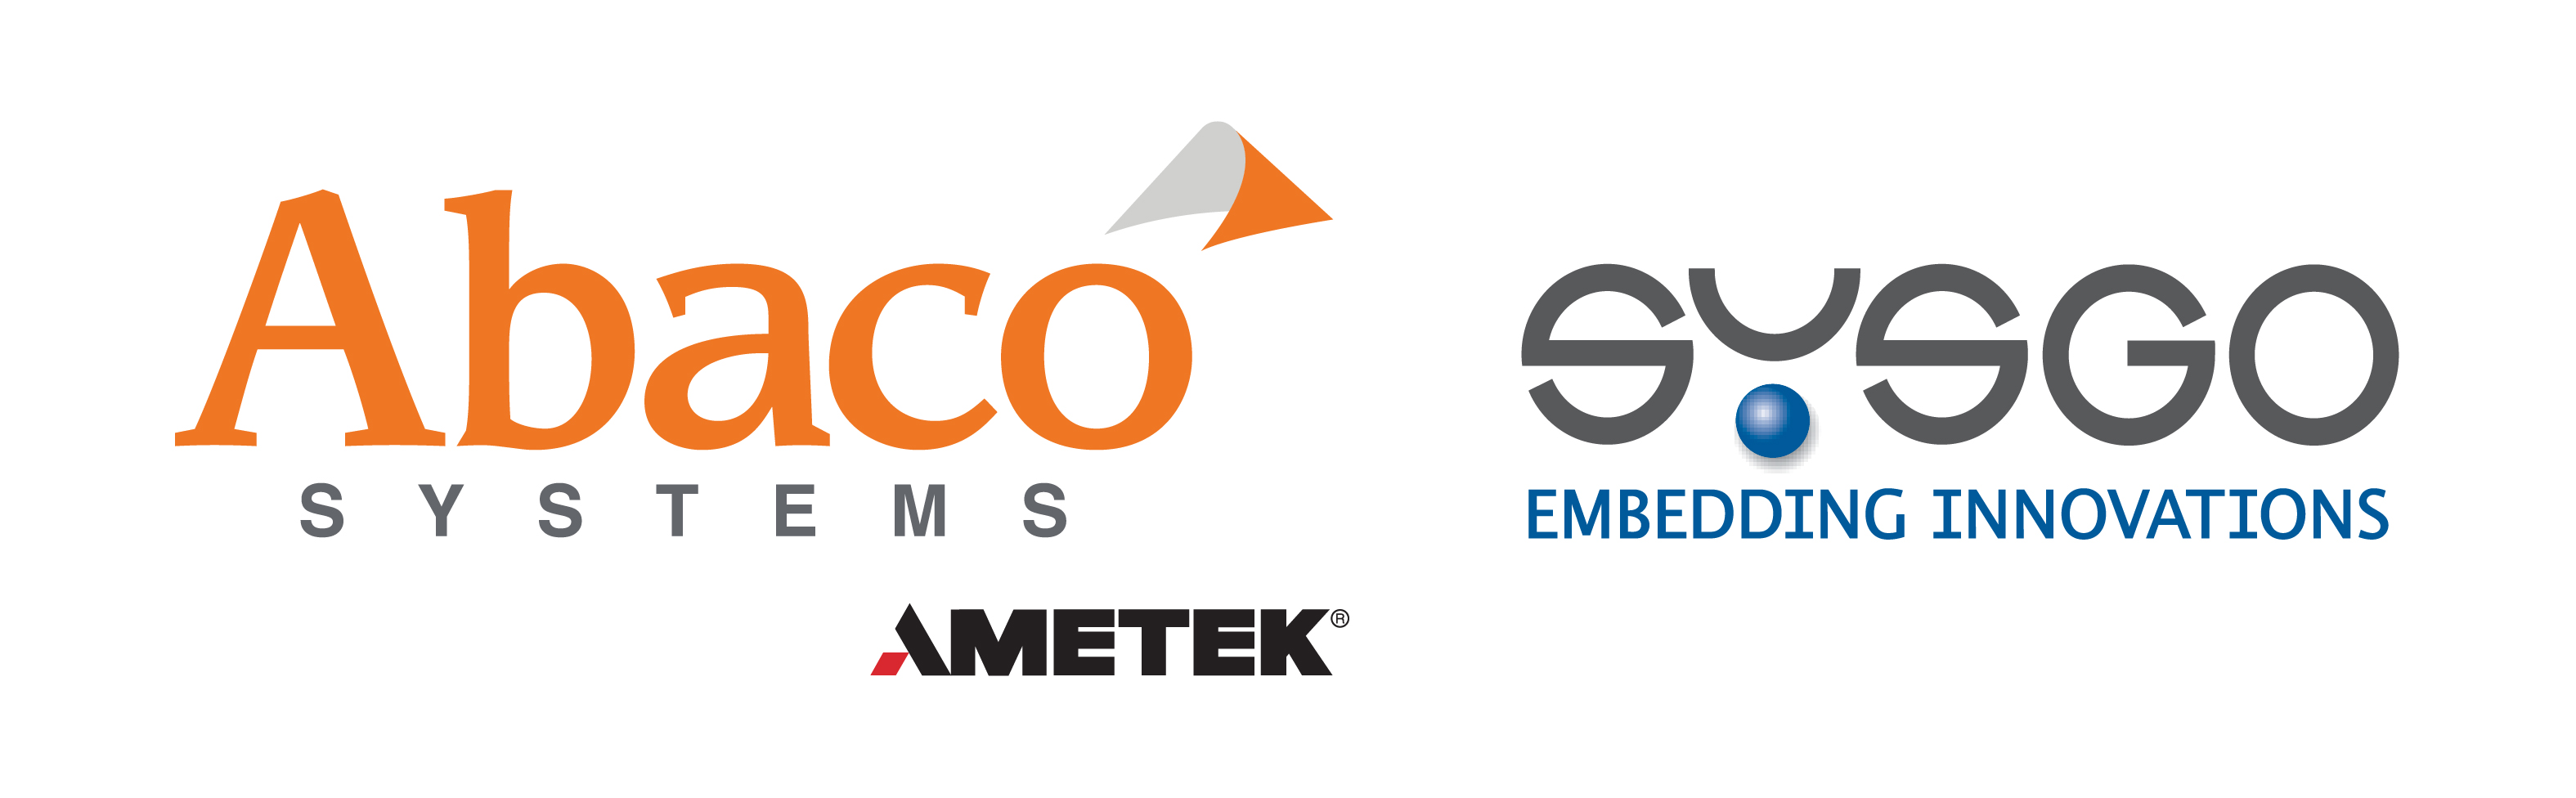 Abaco Systems and SYSGO partnership logo lockup